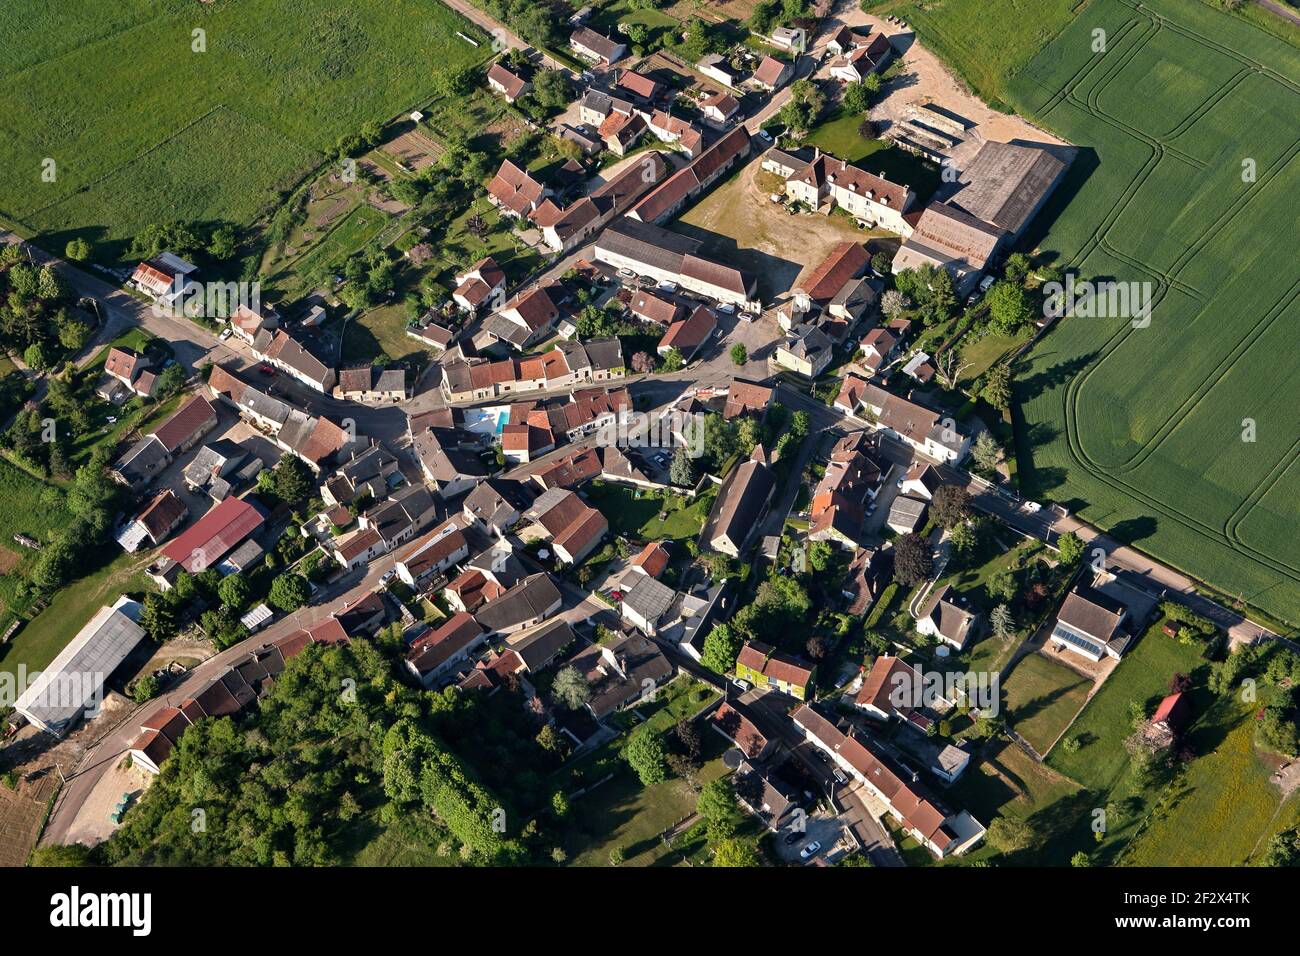 Vue aérienne du village rural de Sery, dans le département de l'Yonne, région Bourgogne-Franche-comté, France Banque D'Images